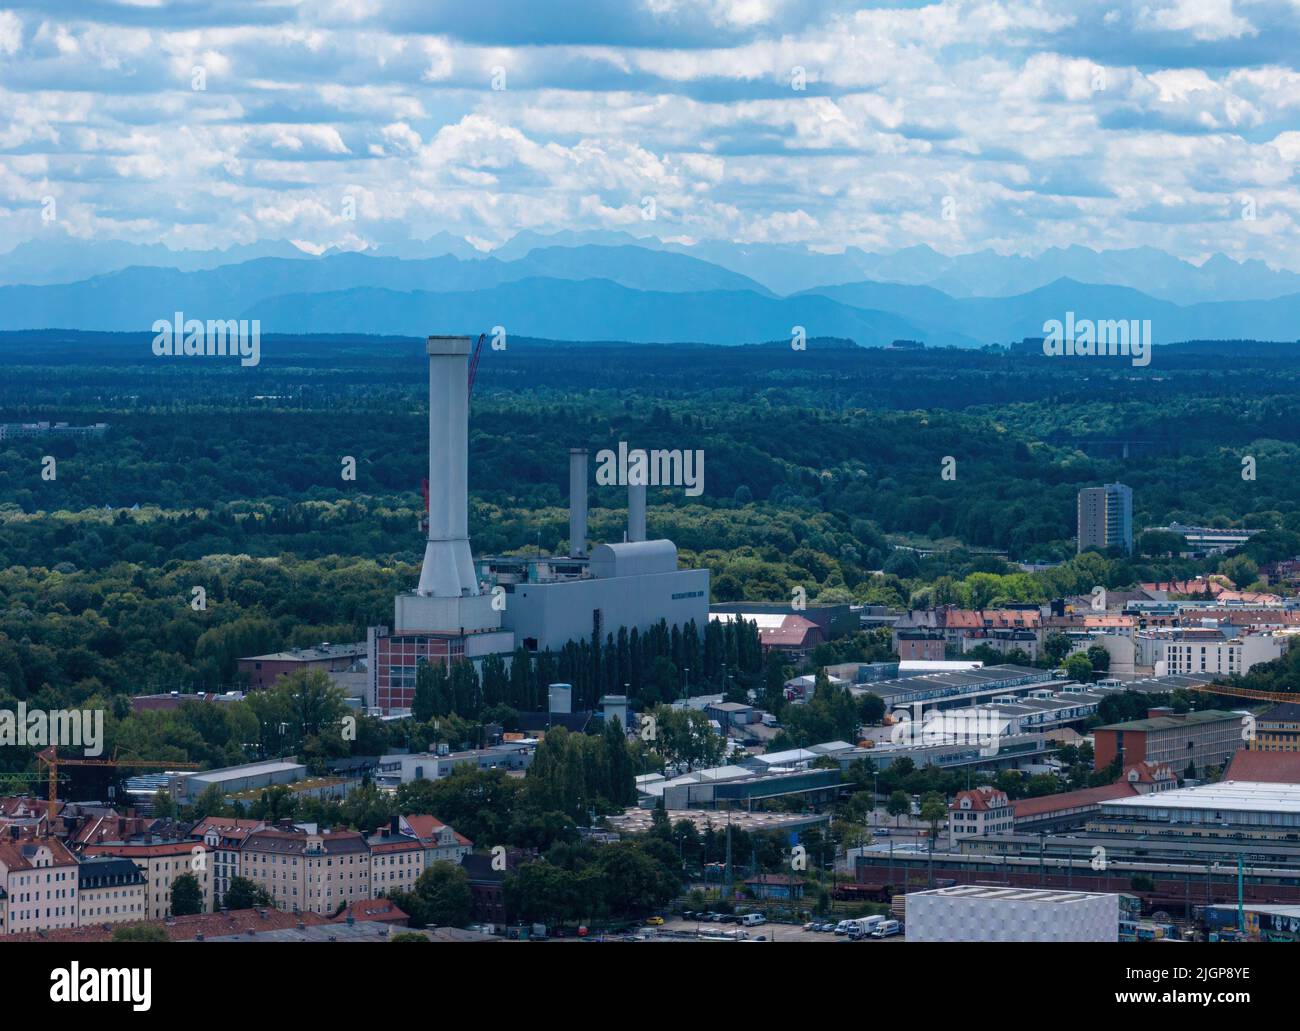 La centrale électrique et thermique de Munich, en Allemagne Banque D'Images